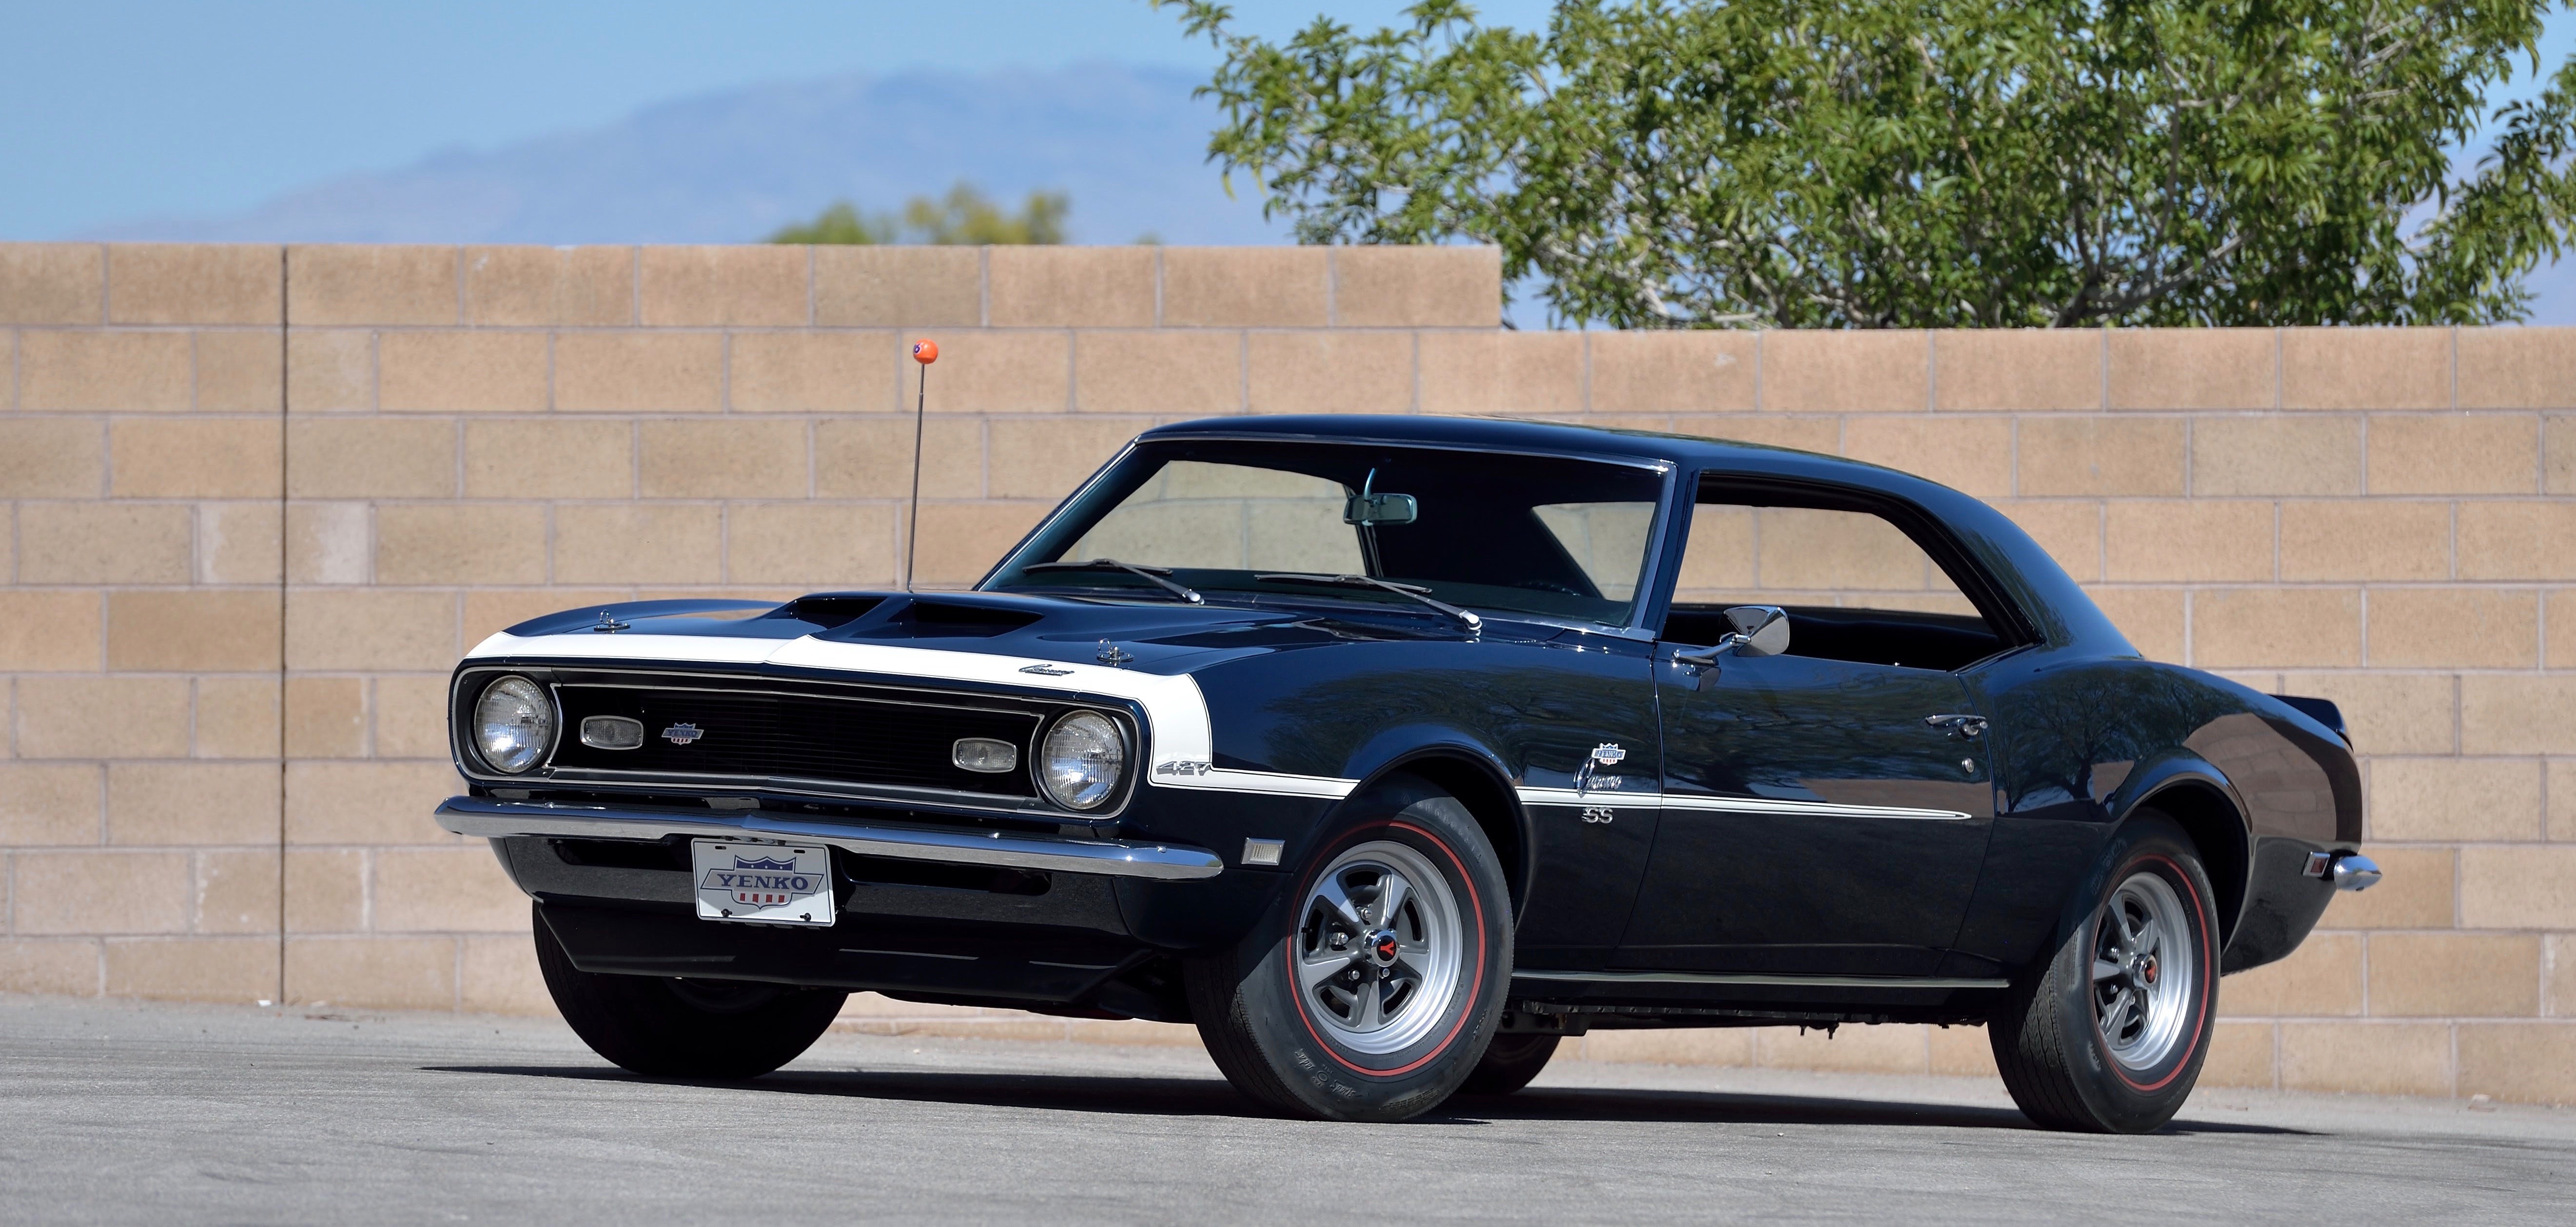 Mecum’s Las Vegas auction sells 557 vehicles for $22 million | ClassicCars